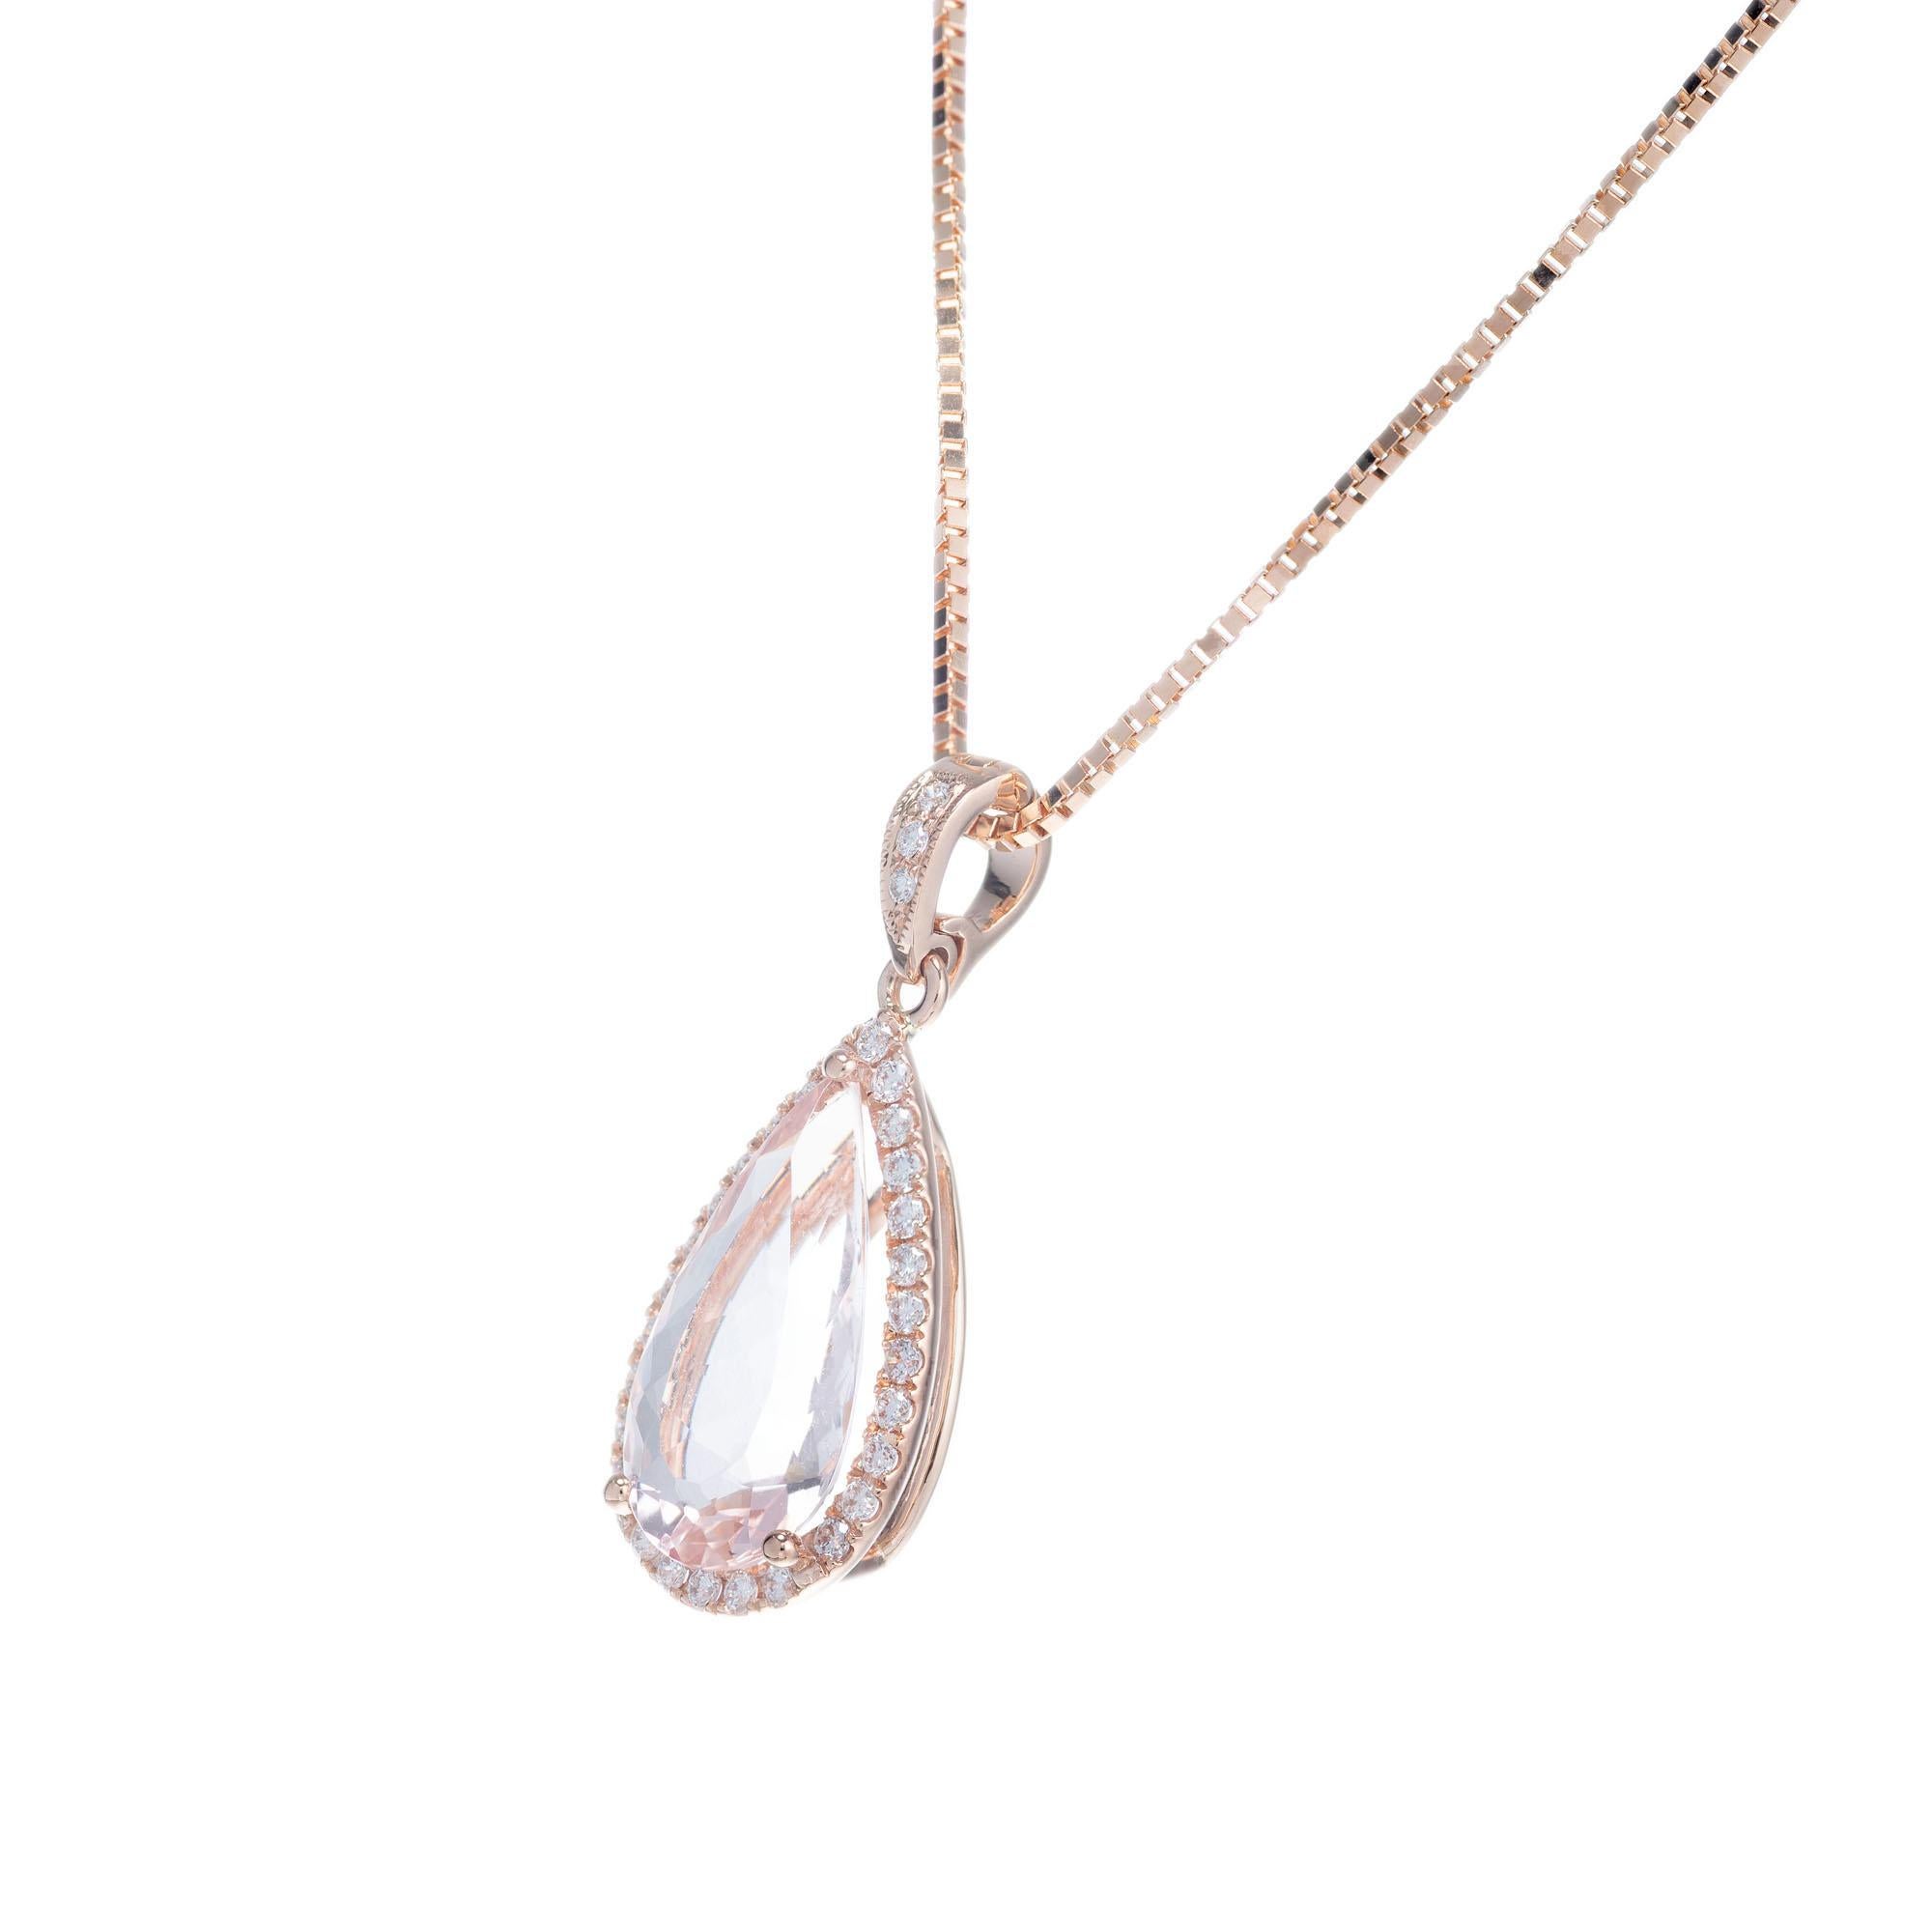 Morganite en forme de poire de 2,68 carats entourée d'un halo de diamants pleine taille, dans un collier pendentif en or rose de l'atelier Peter Suchy. chaîne en or rose 14k de 16 pouces

1 morganite rose en forme de poire, environ 2,68 ct
31